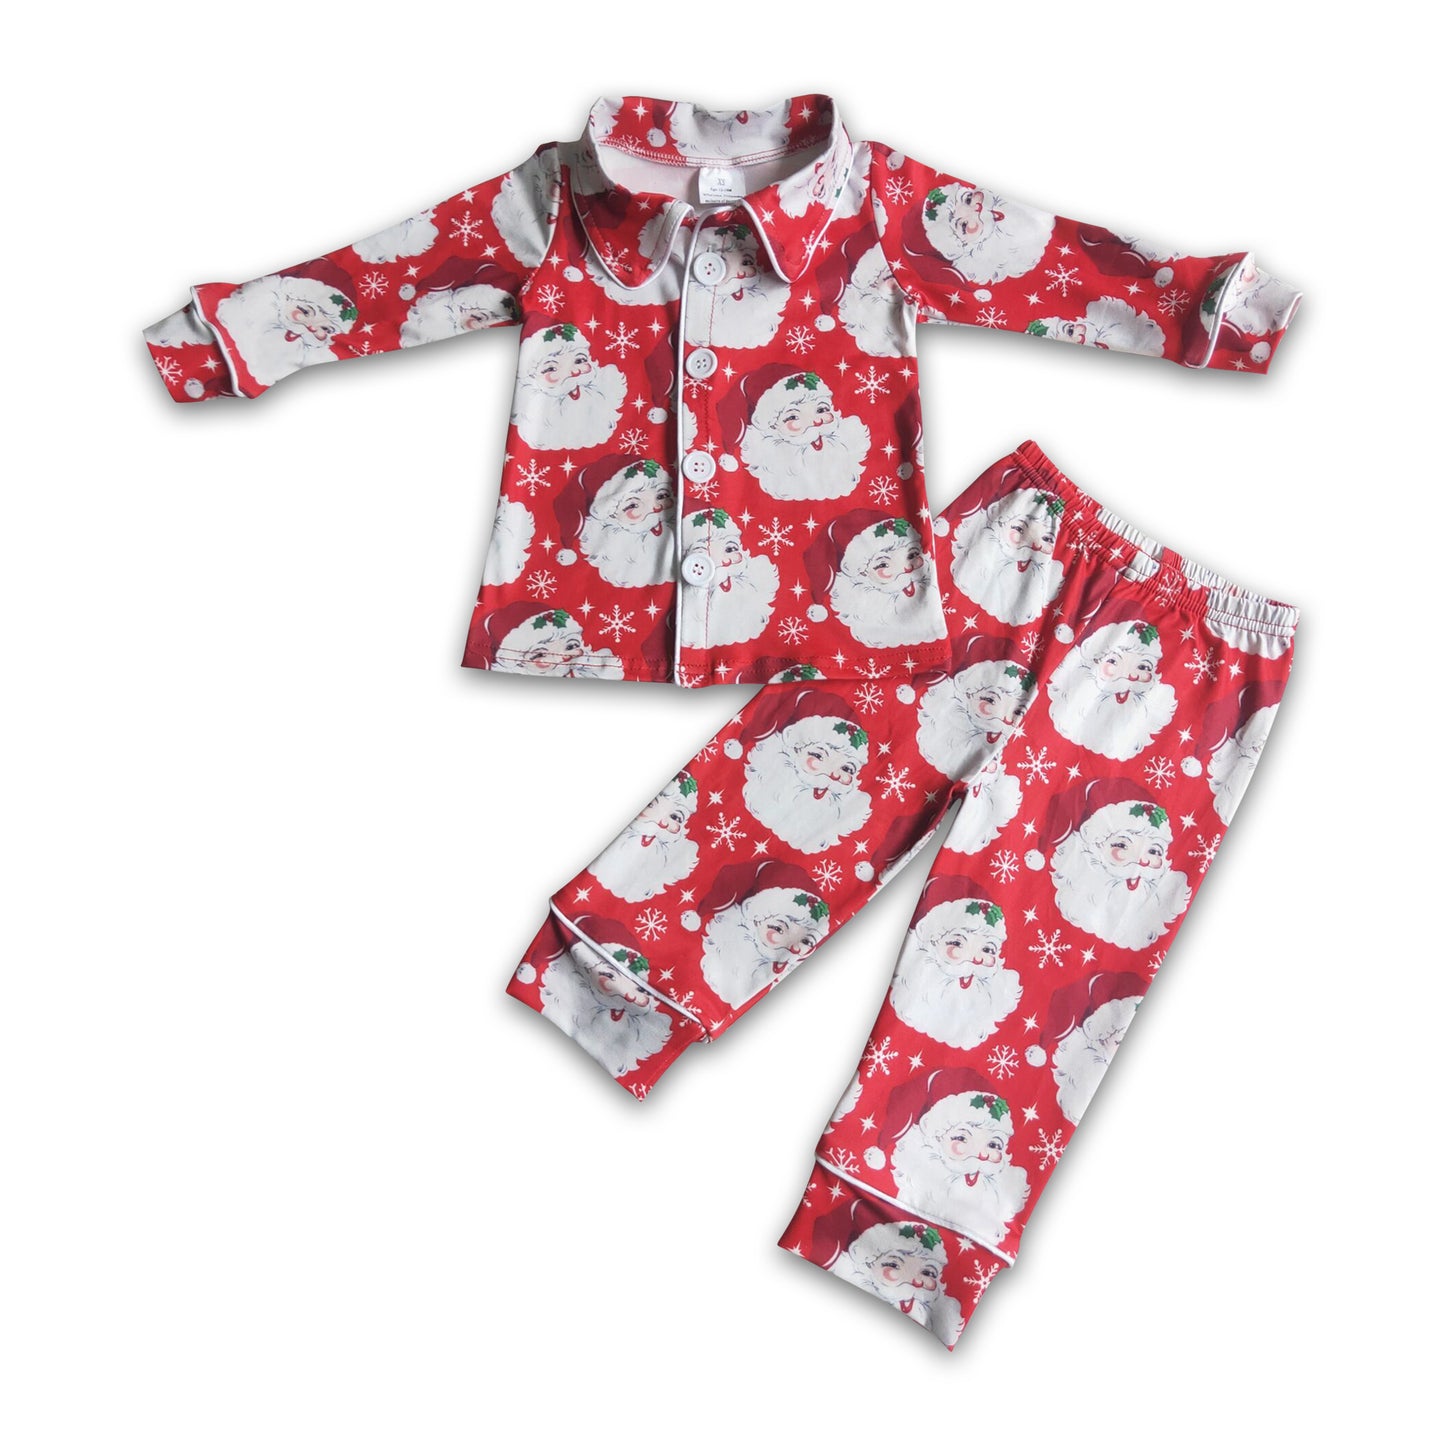 Santa print boy Christmas pajamas